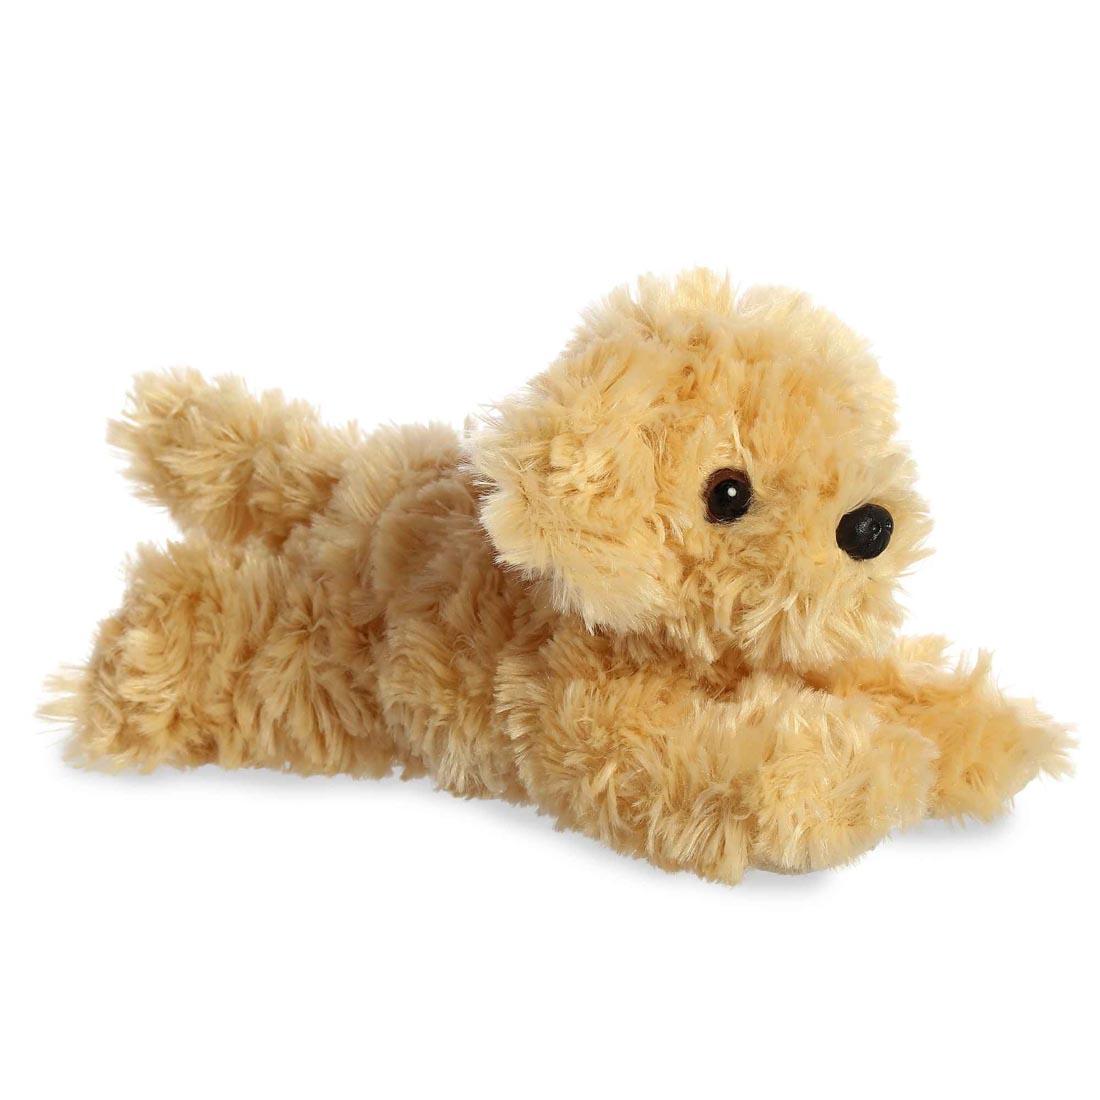 Goldendoodle dog stuffed animal